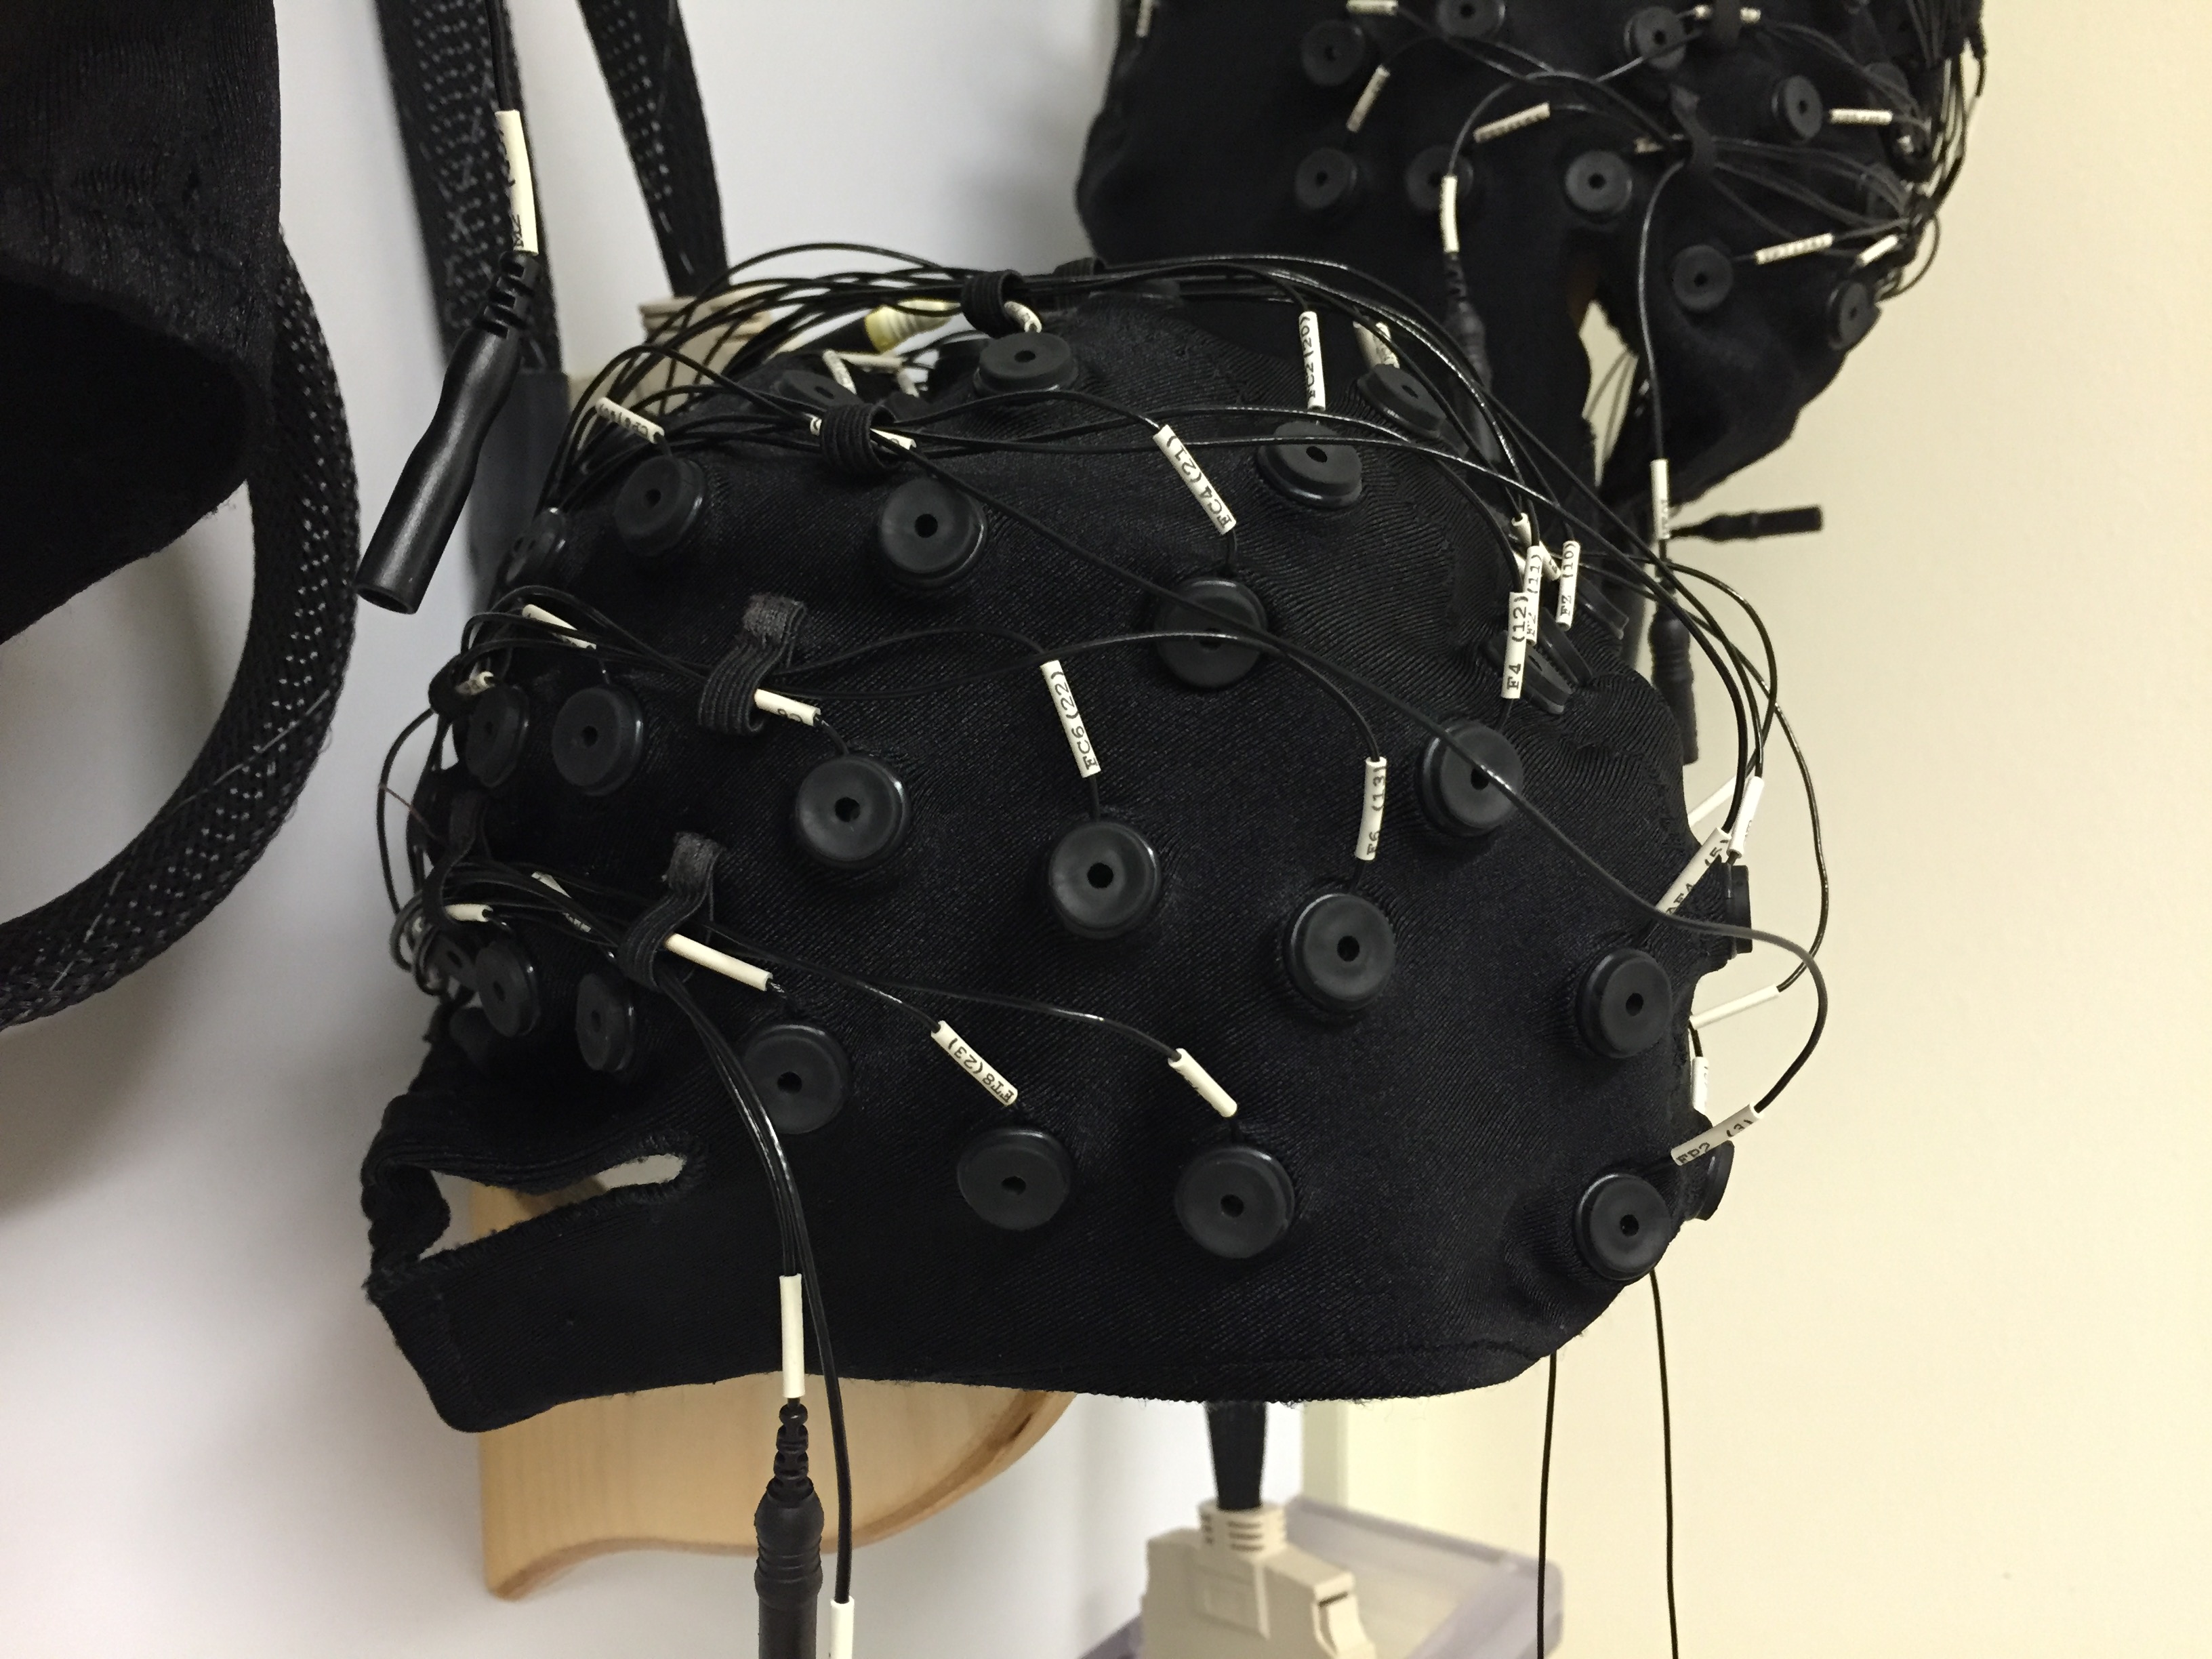 helmet with wires